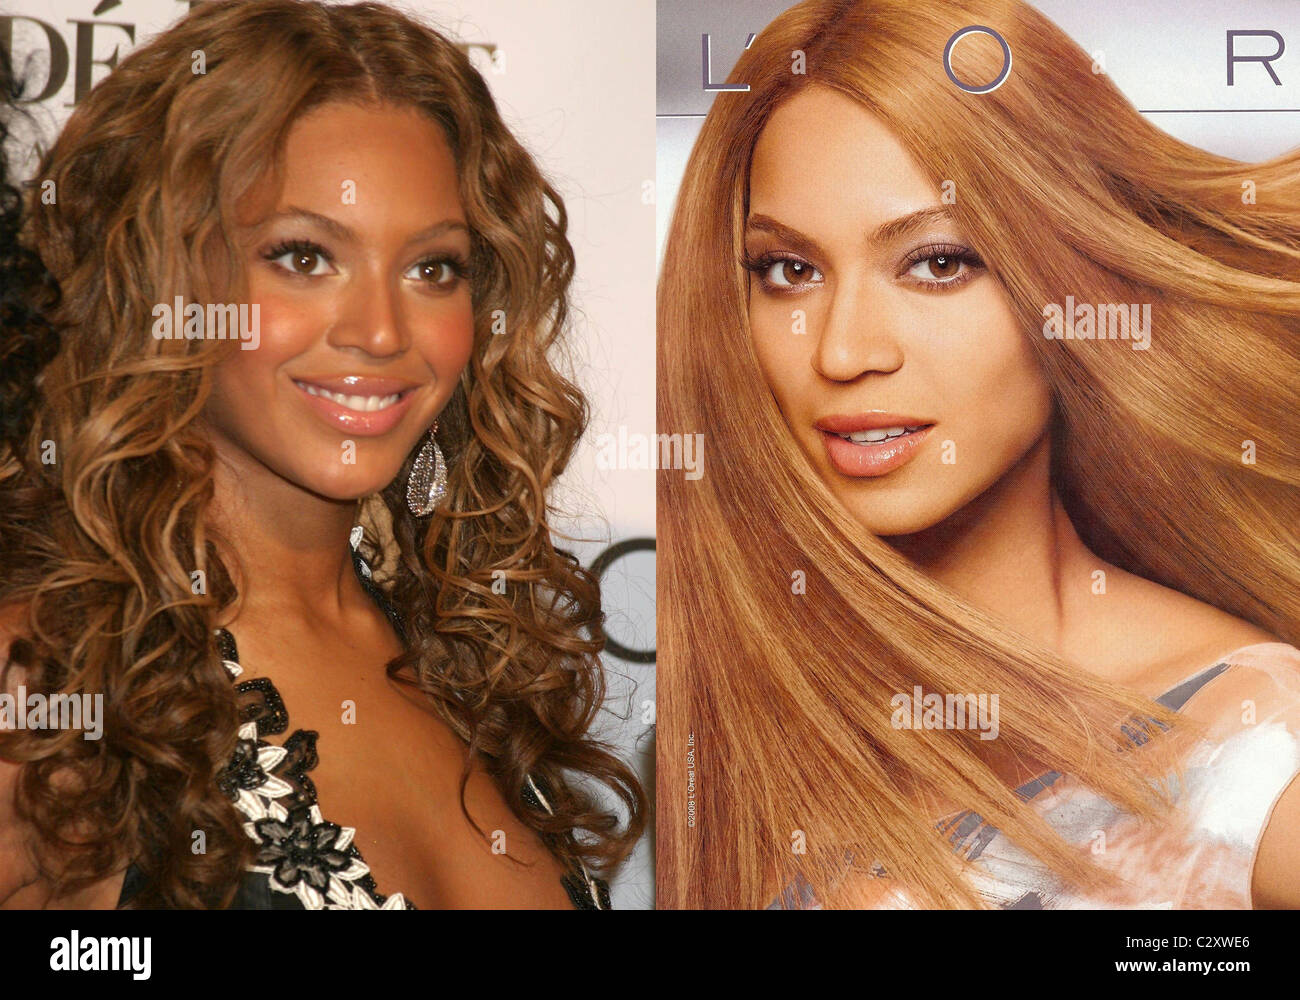 KNOWLES' L'ORÉAL ANNONCE LA COULEUR DE LA PEAU PLUS DE LIGNE SPARKS R&B  superstar Beyonce Knowles' aurait été la peau blanchie numériquement dans  un Photo Stock - Alamy